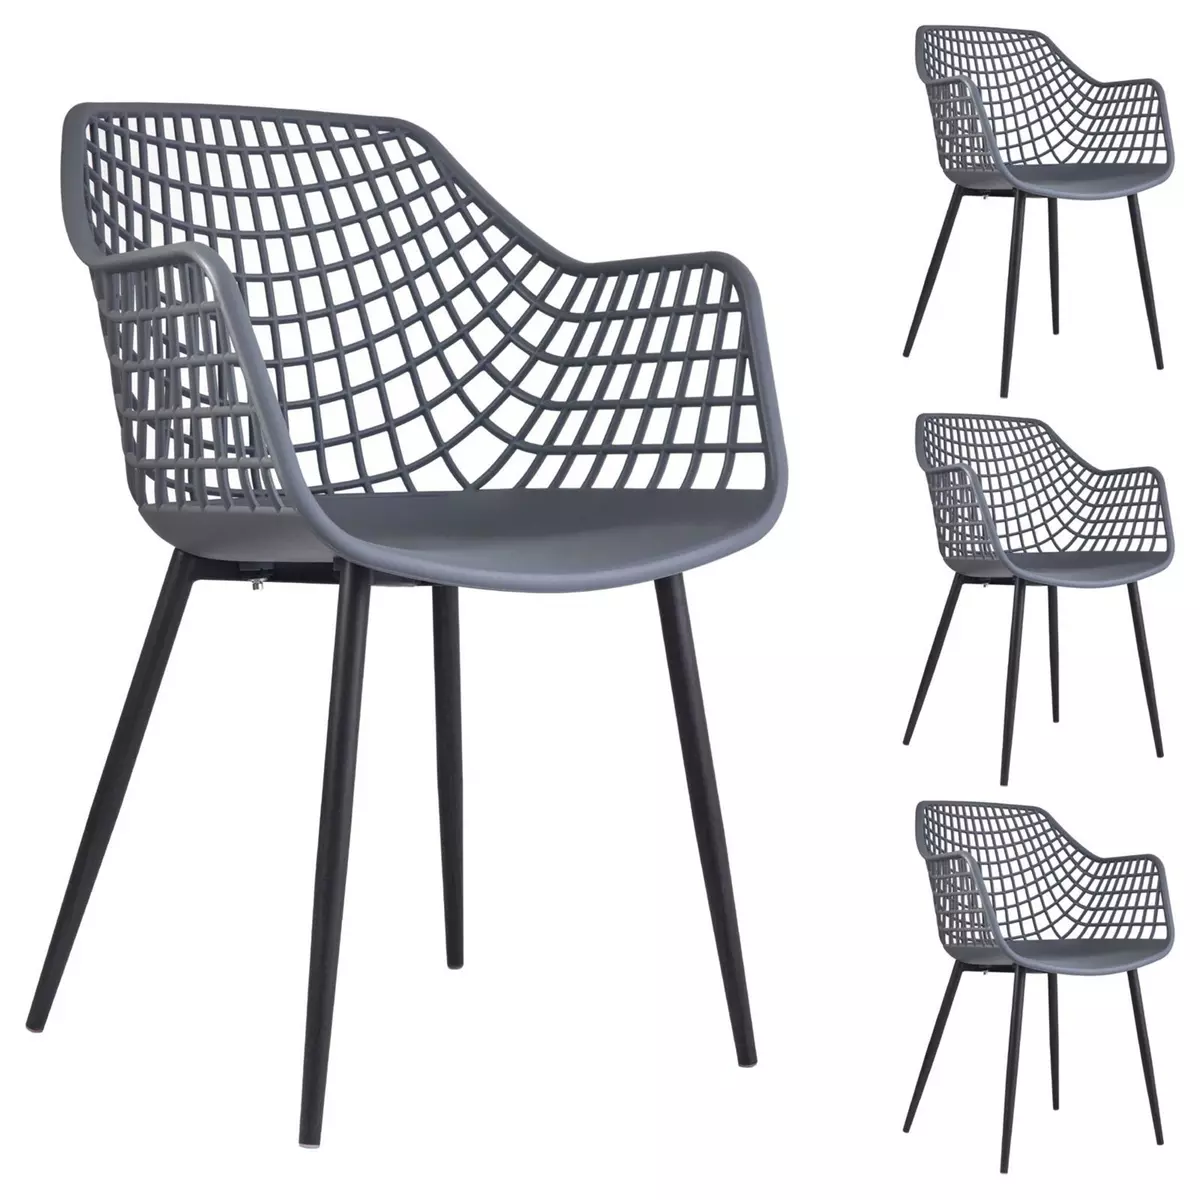 IDIMEX Lot de 4 chaises LUCIA pour salle à manger ou cuisine au design retro avec accoudoirs, coque en plastique gris et 4 pieds en métal